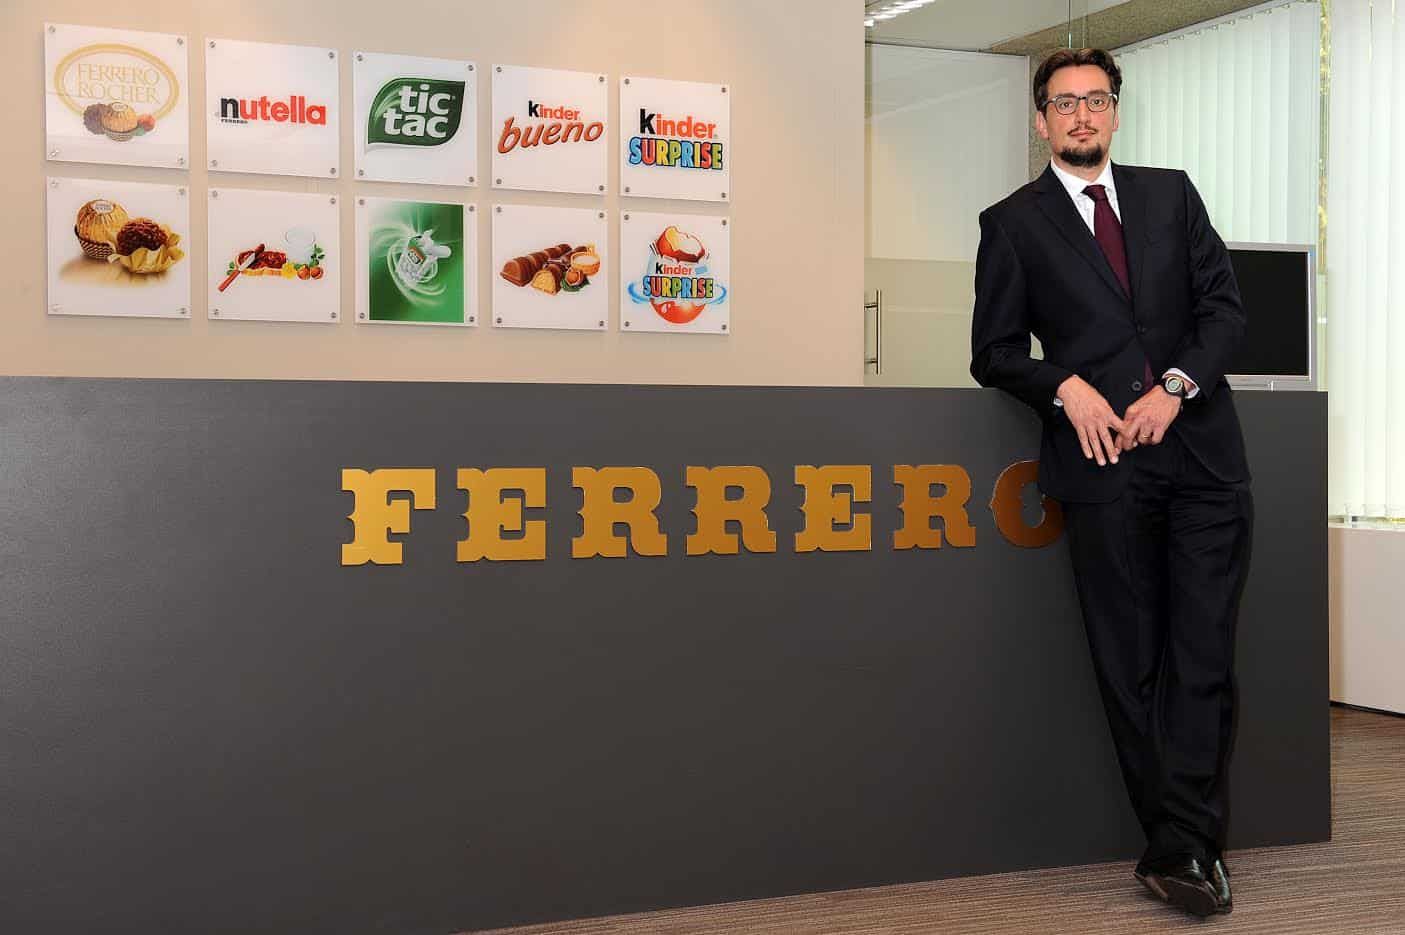 Як заробити мільярди доларів на шоколаді: історія успіху власника Nutella Джованні Ферреро